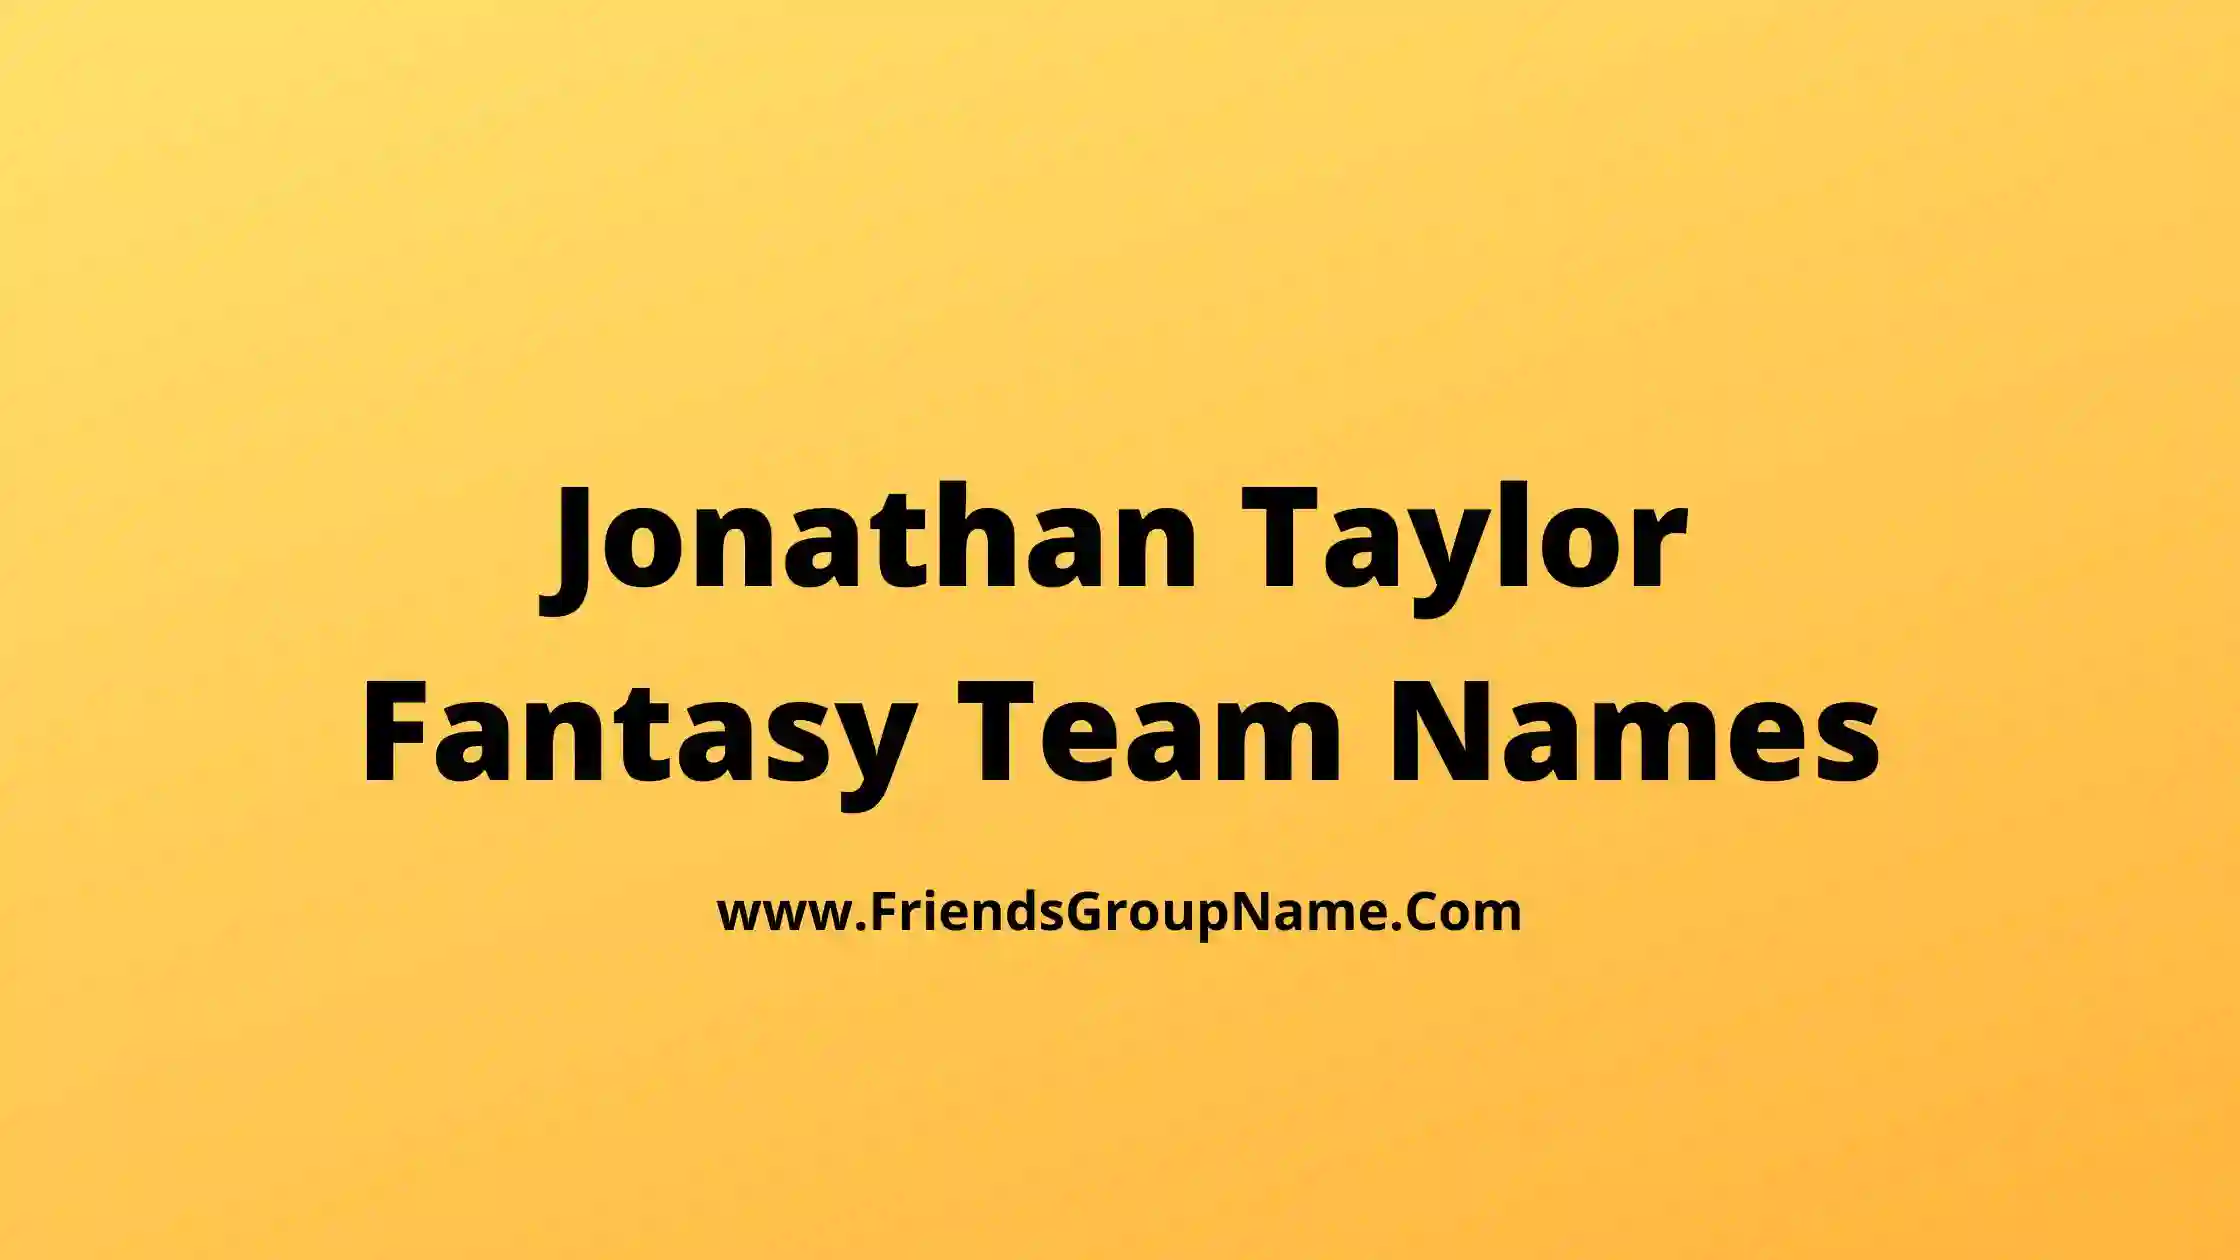 Jonathan Taylor Fantasy Team Names